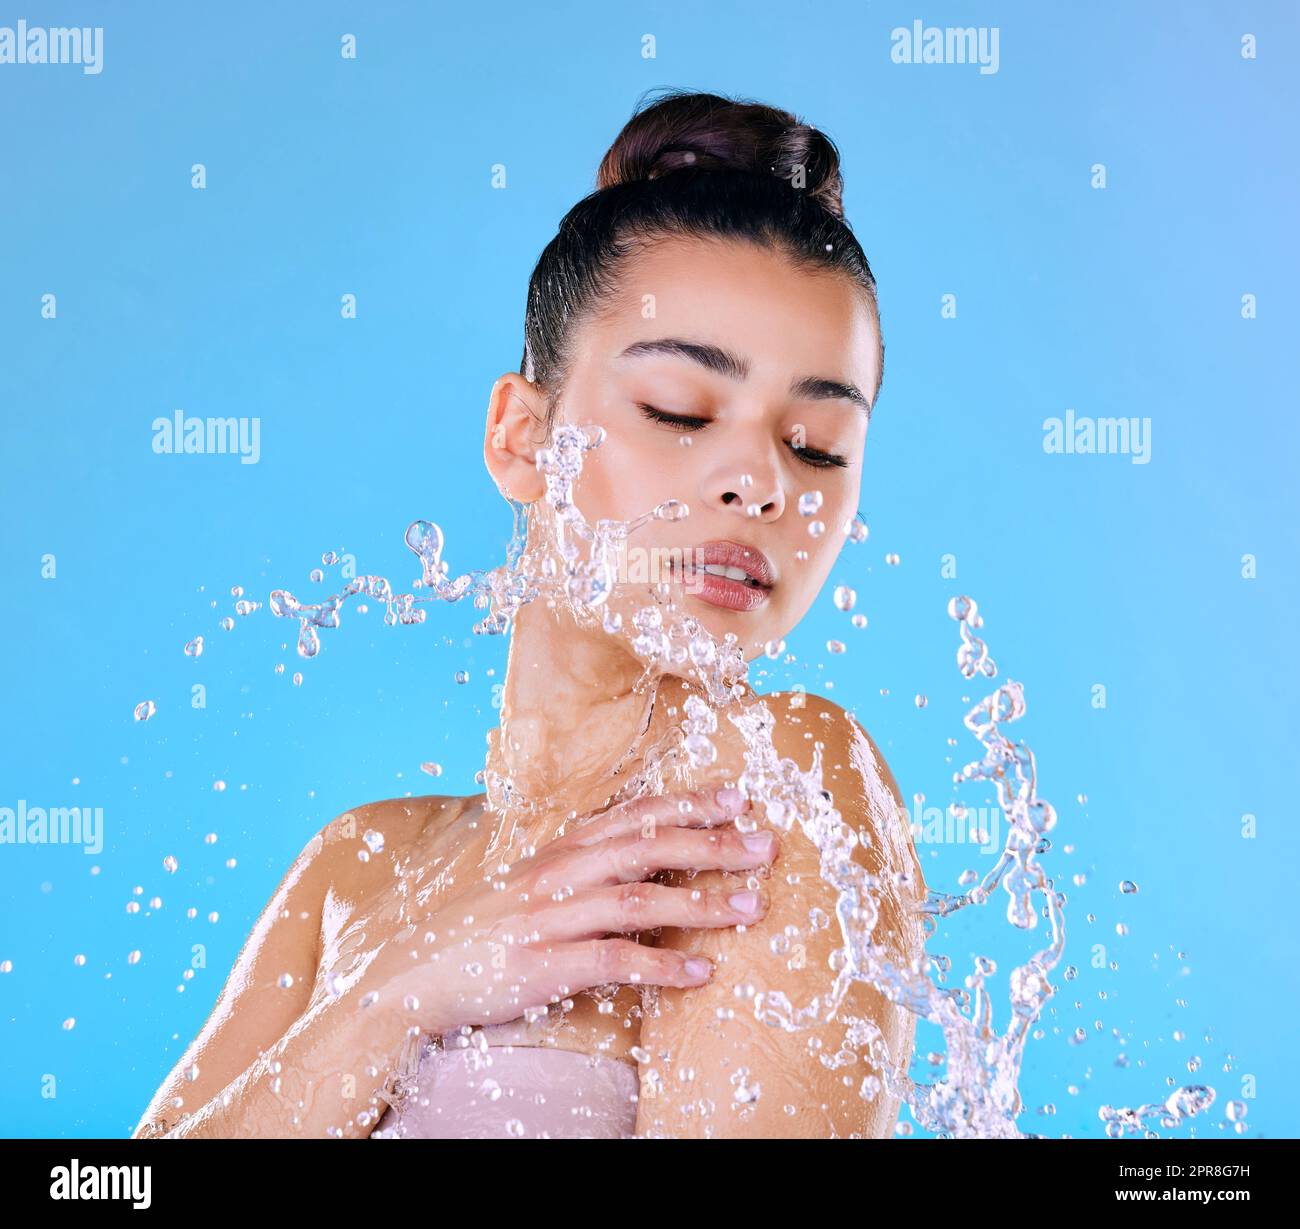 Ich Zeit. Aufnahme einer schönen jungen Frau, die vor blauem Hintergrund mit Wasser bespritzt wurde. Stockfoto